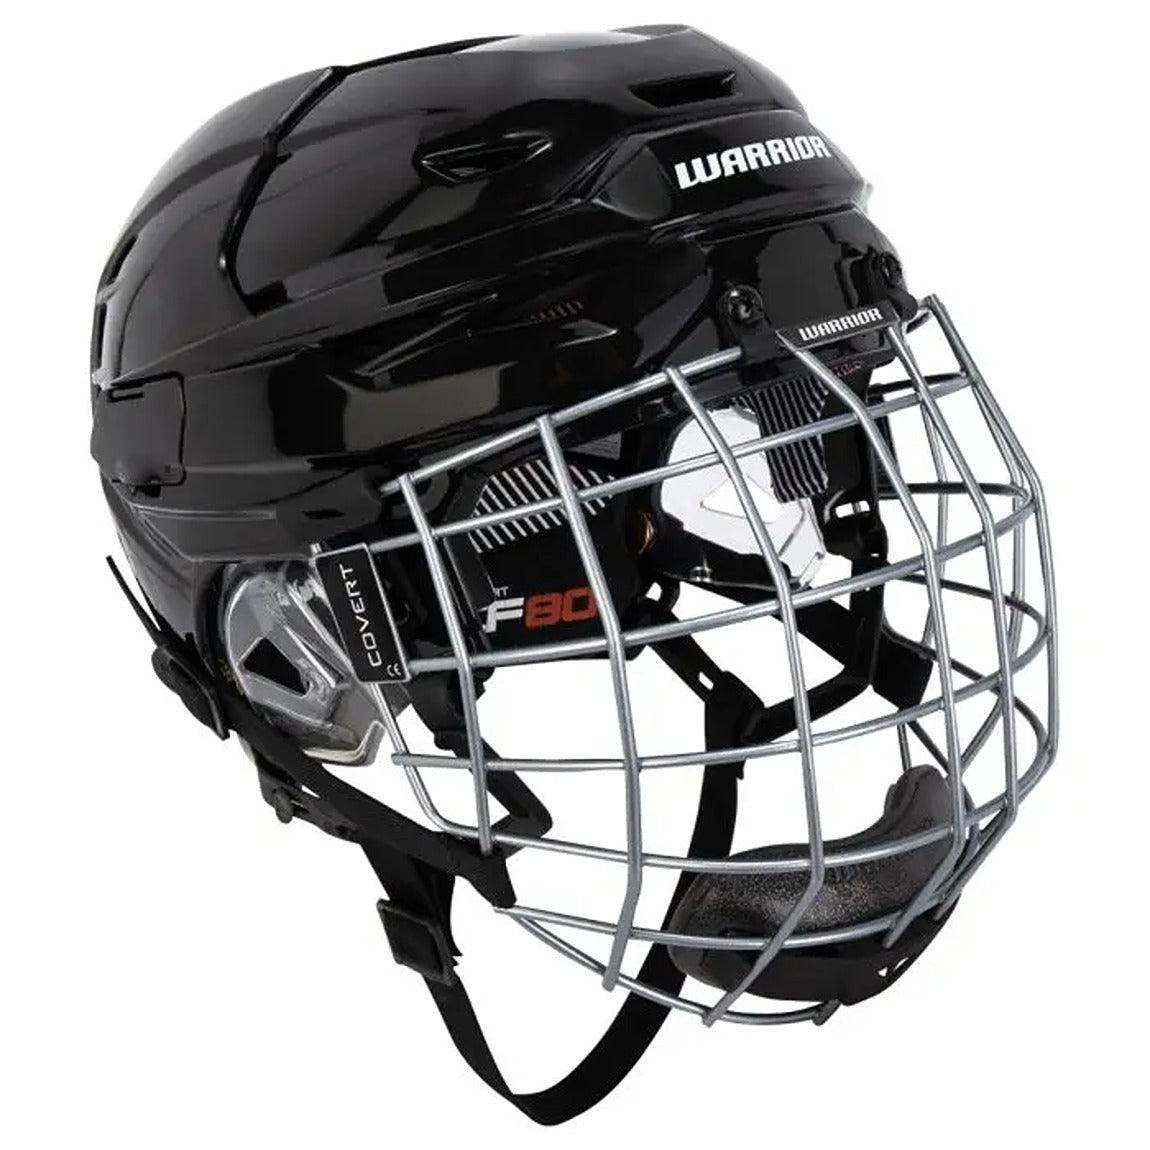 Protection de hockey pour la tête et le visage – Page 2 – Sports Excellence